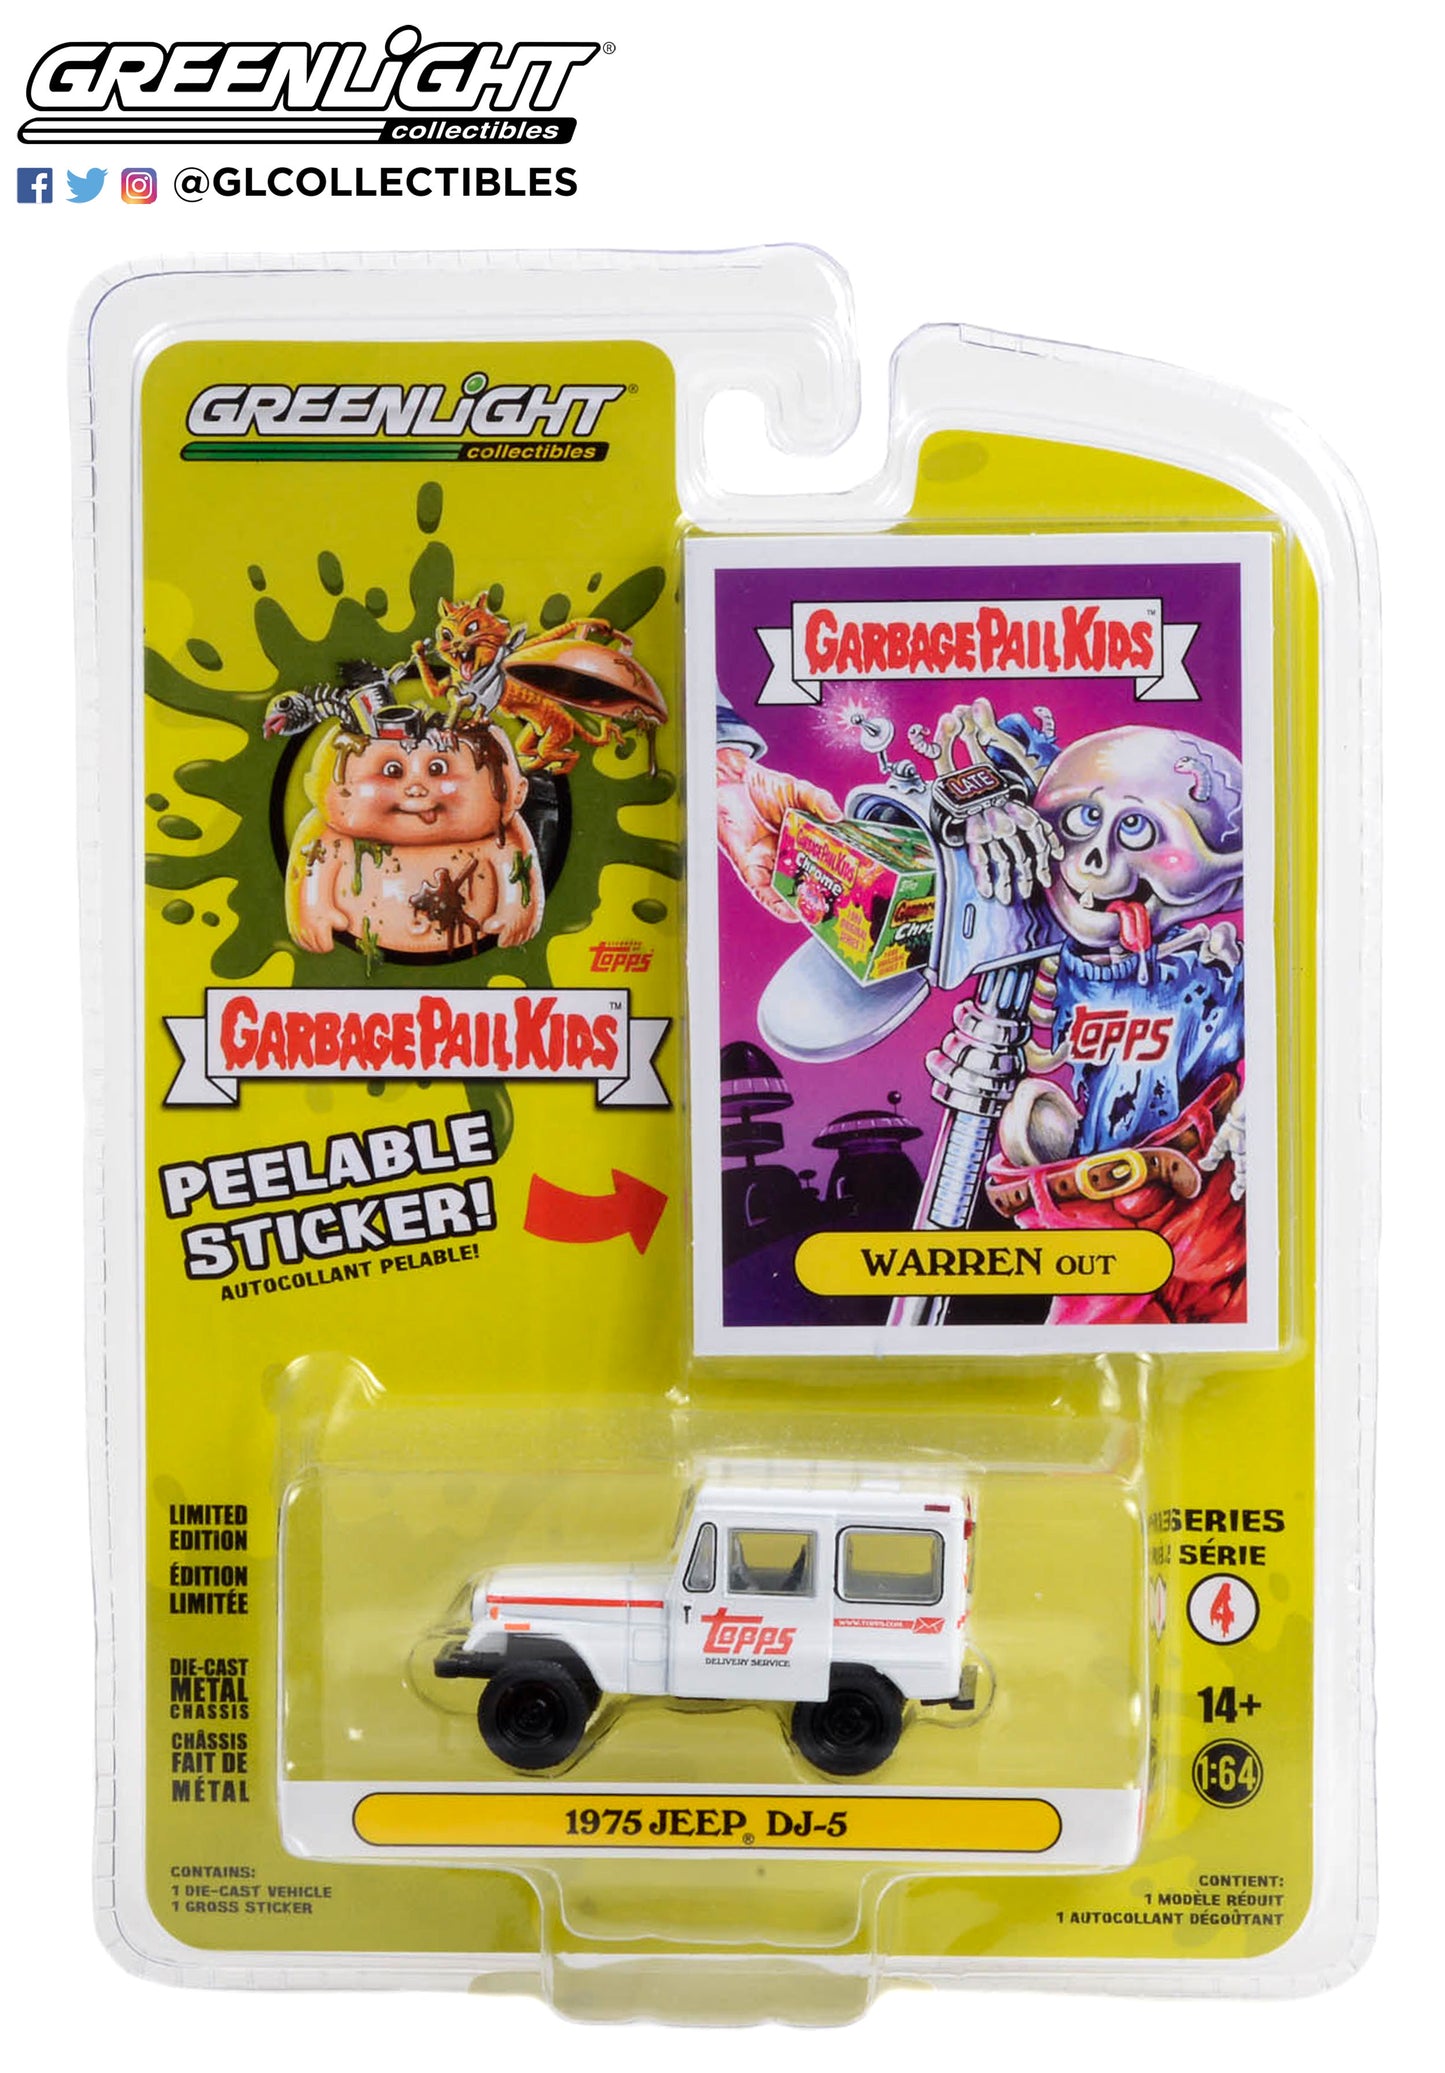 GreenLight 1:64 Garbage Pail Kids Series 4 - Warren Out - 1975 Jeep DJ-5 54070-B